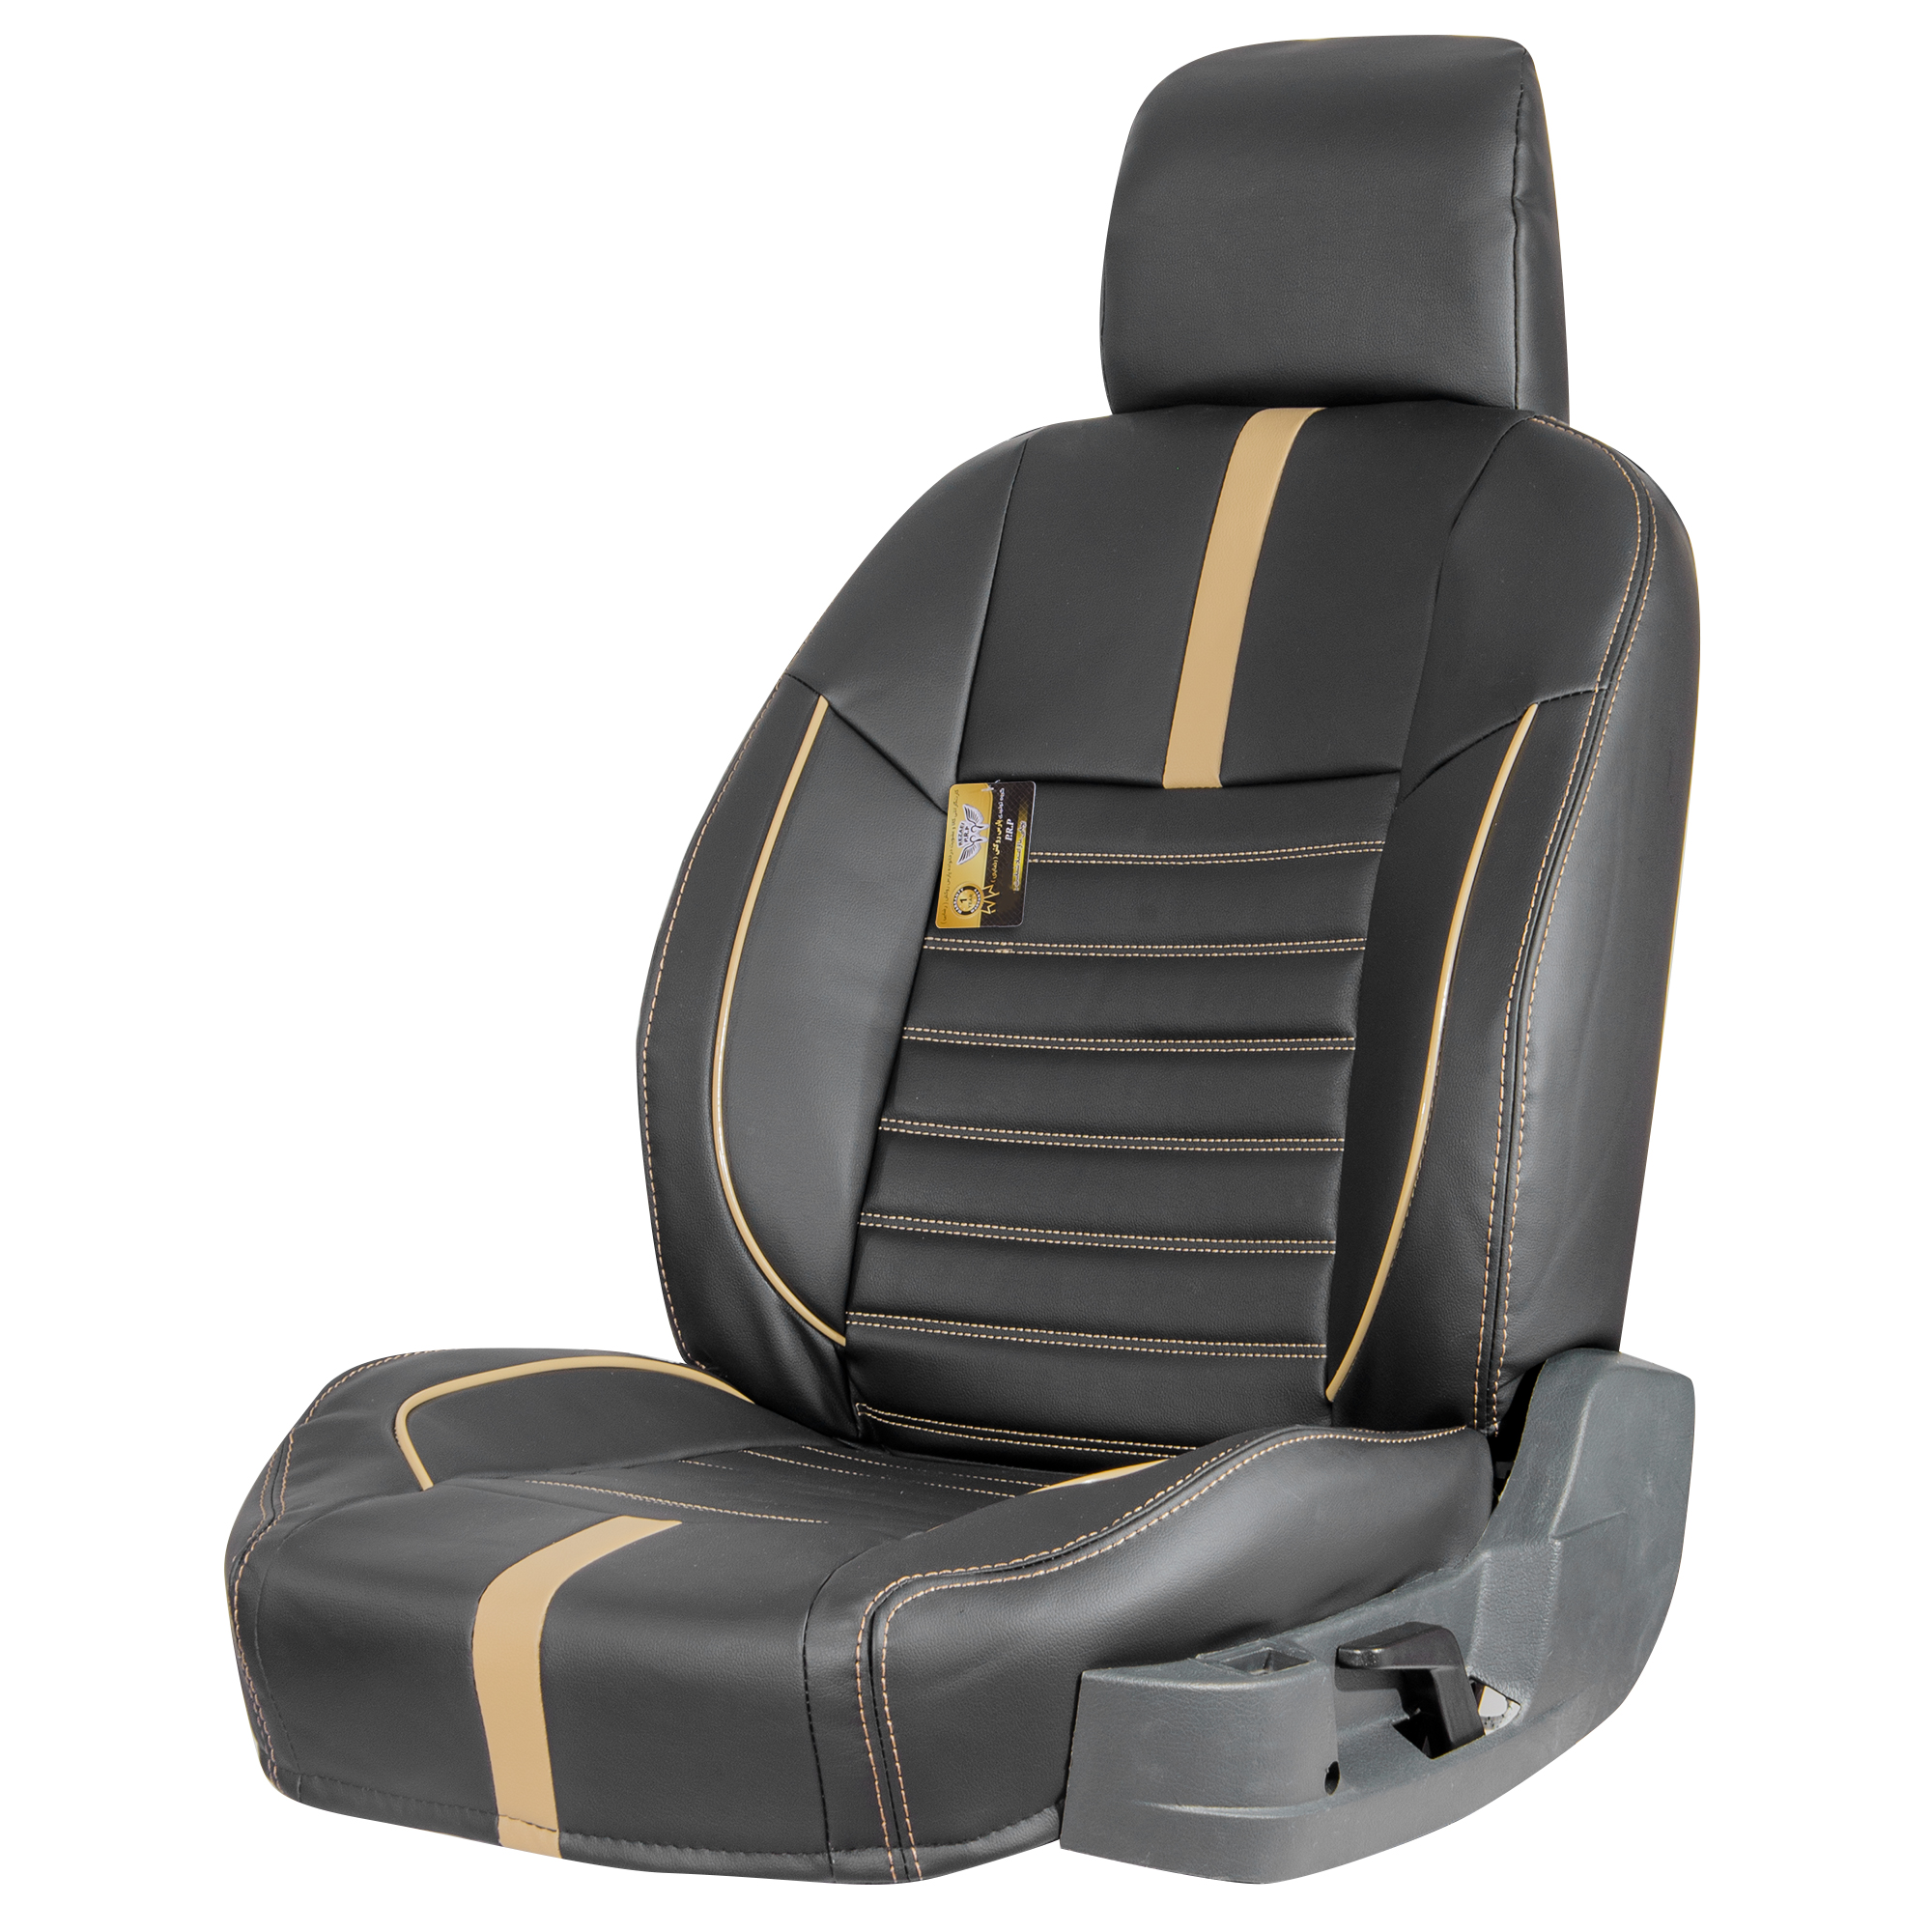 نکته خرید - قیمت روز روکش صندلی خودرو گروه تولیدی پارس روکش رضایی مدل 2023 مناسب برای پژو پارس خرید